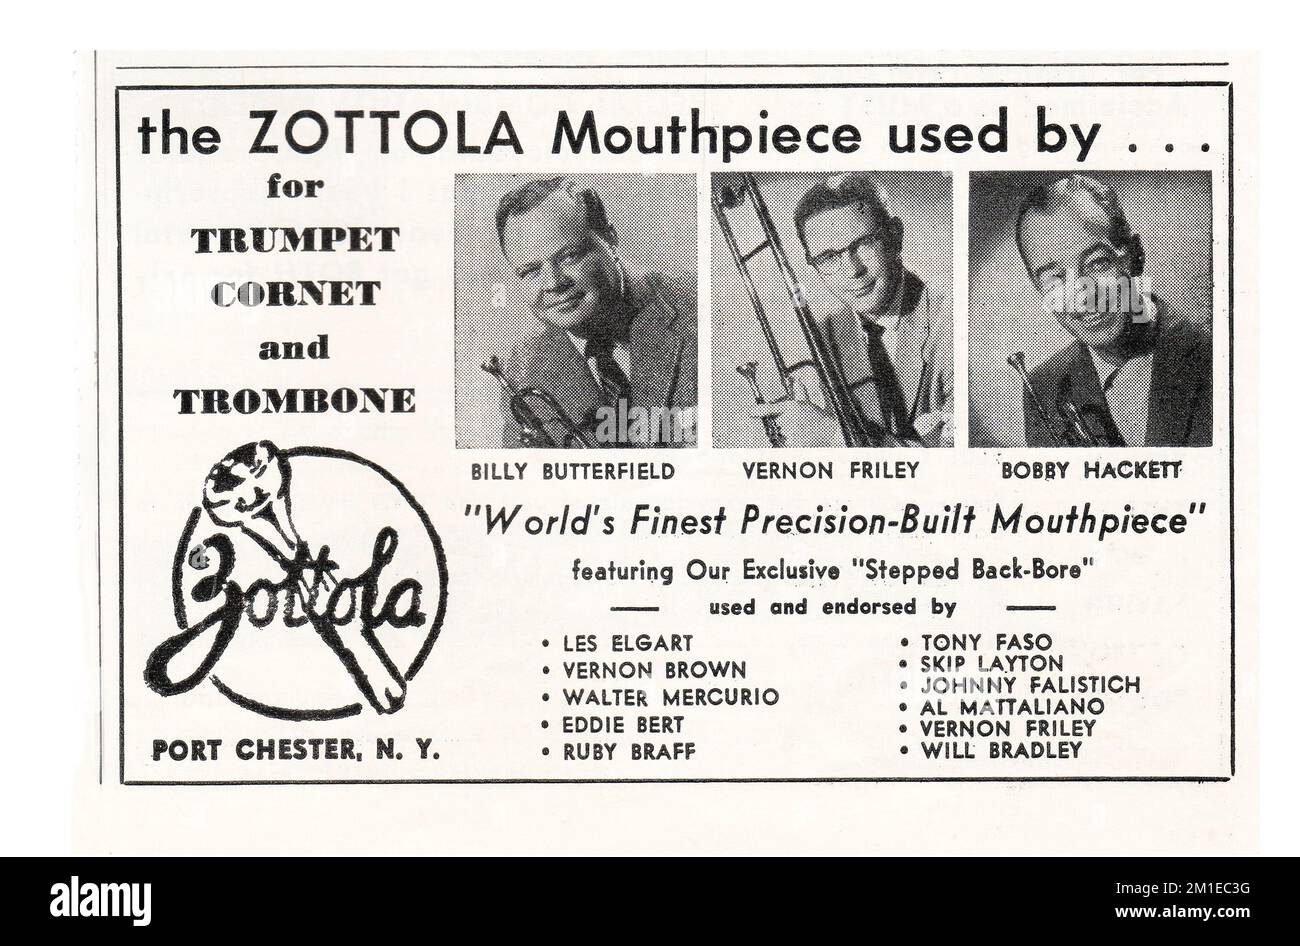 Une publicité pour les porte-paroles de Zottola mettant en vedette 3 musiciens de jazz caucasiens - Billy Butterfield, Vernon Riley et Bobby Hackett. D'un magazine musical 1950s. Banque D'Images